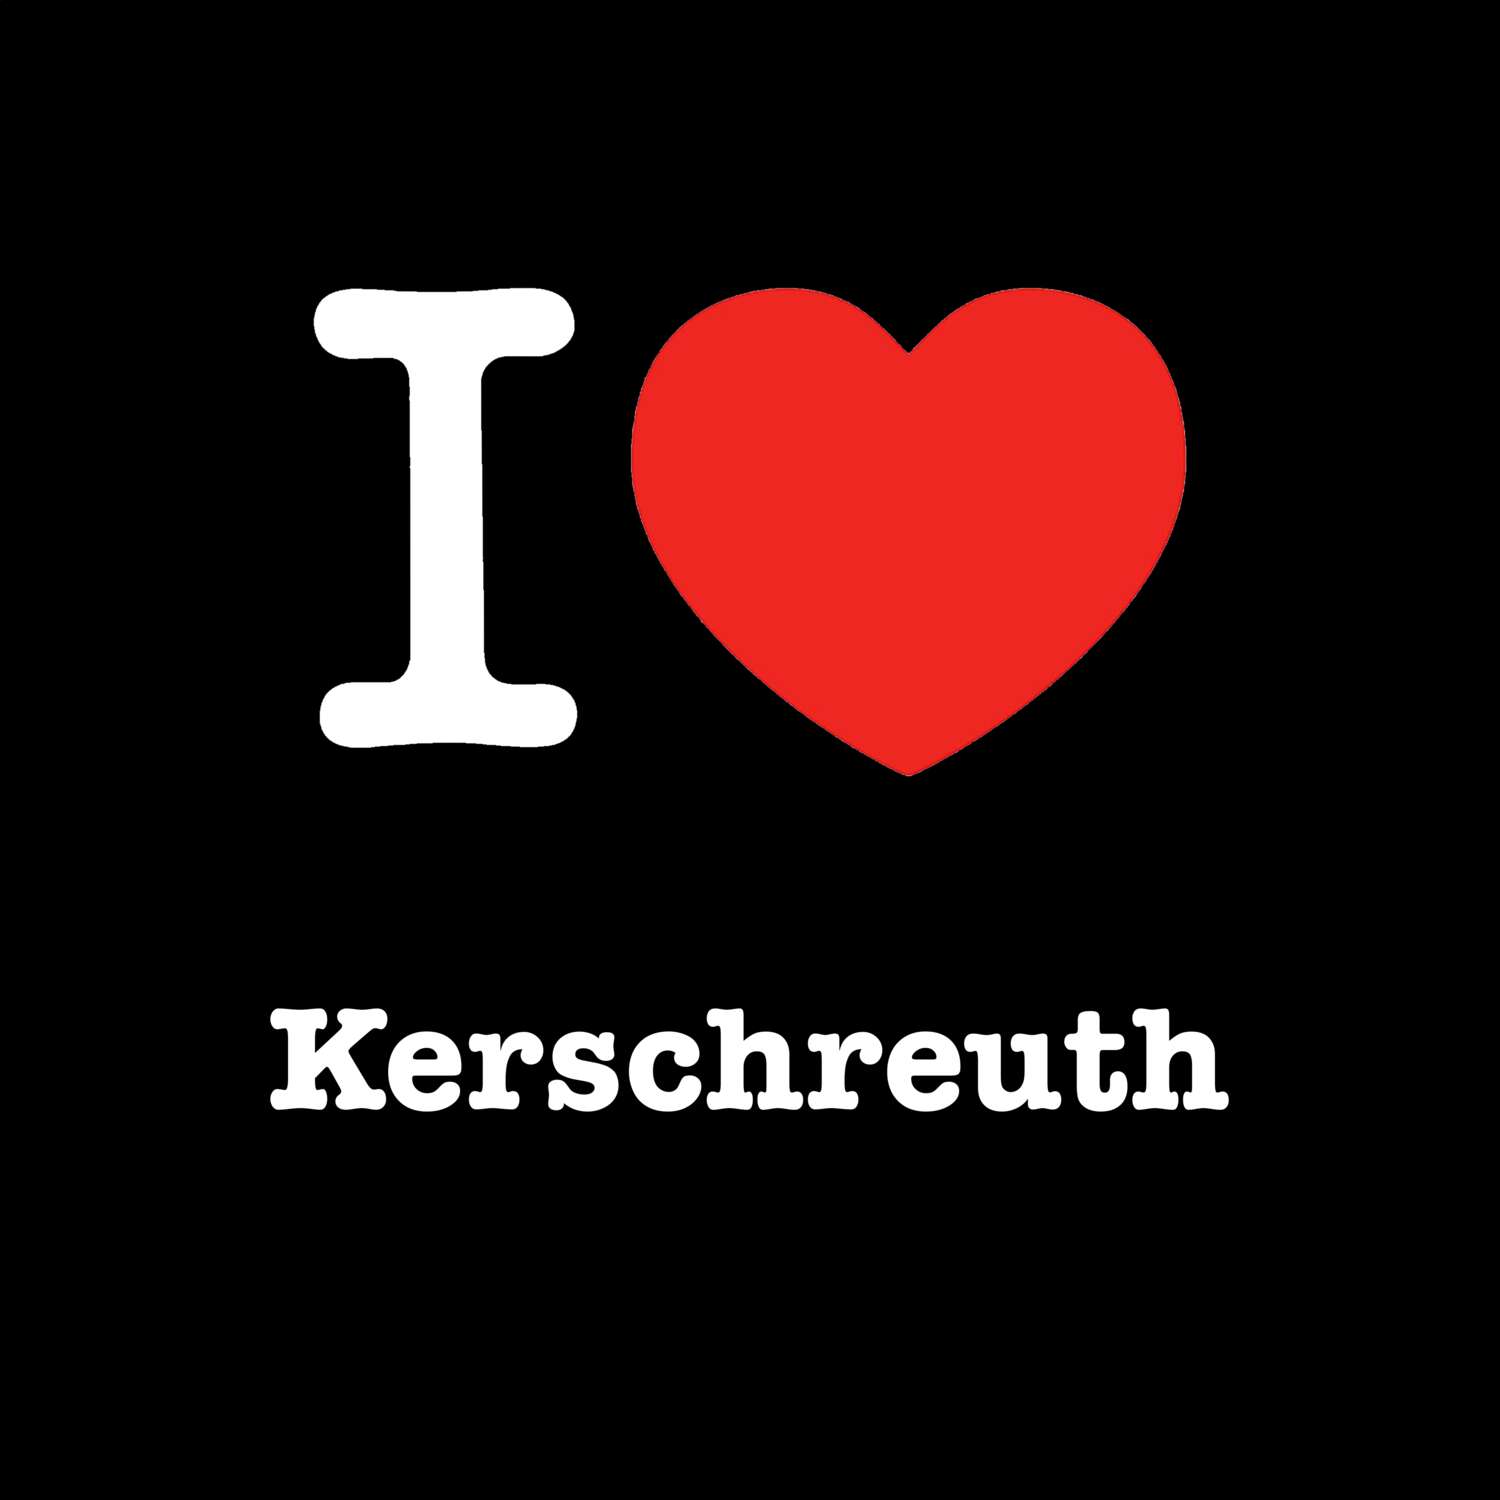 Kerschreuth T-Shirt »I love«